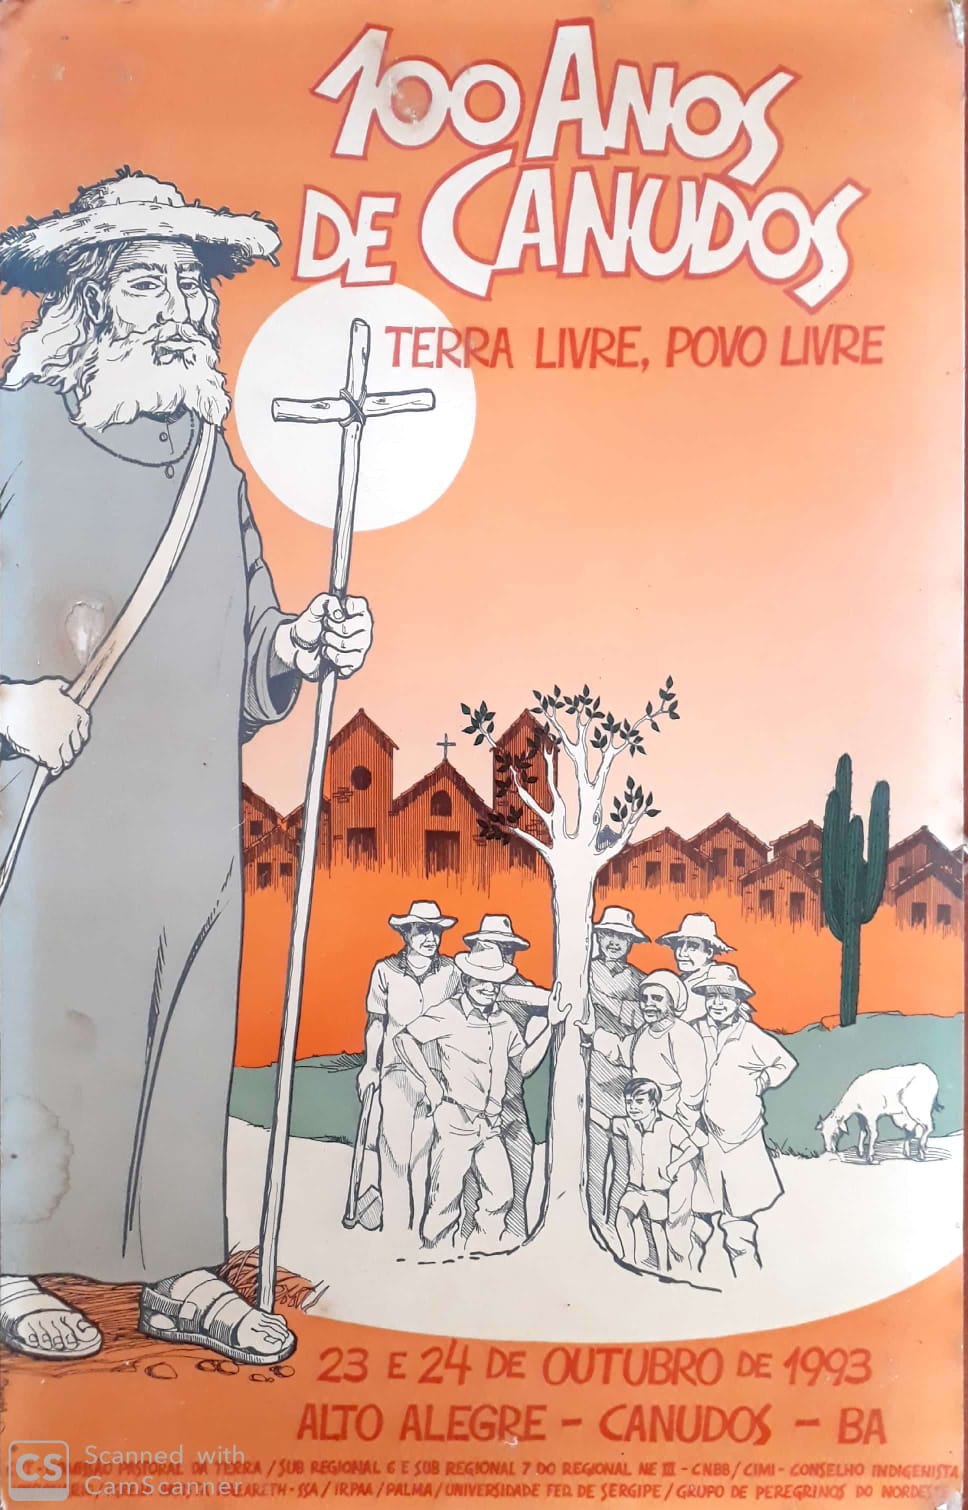 Cartaz ilustrado em cinza e branco, com fundo laranja, sobre a guerra de Canudos. Em primeiro plano, Antônio Conselheiros; atrás há um grupo de pessoas